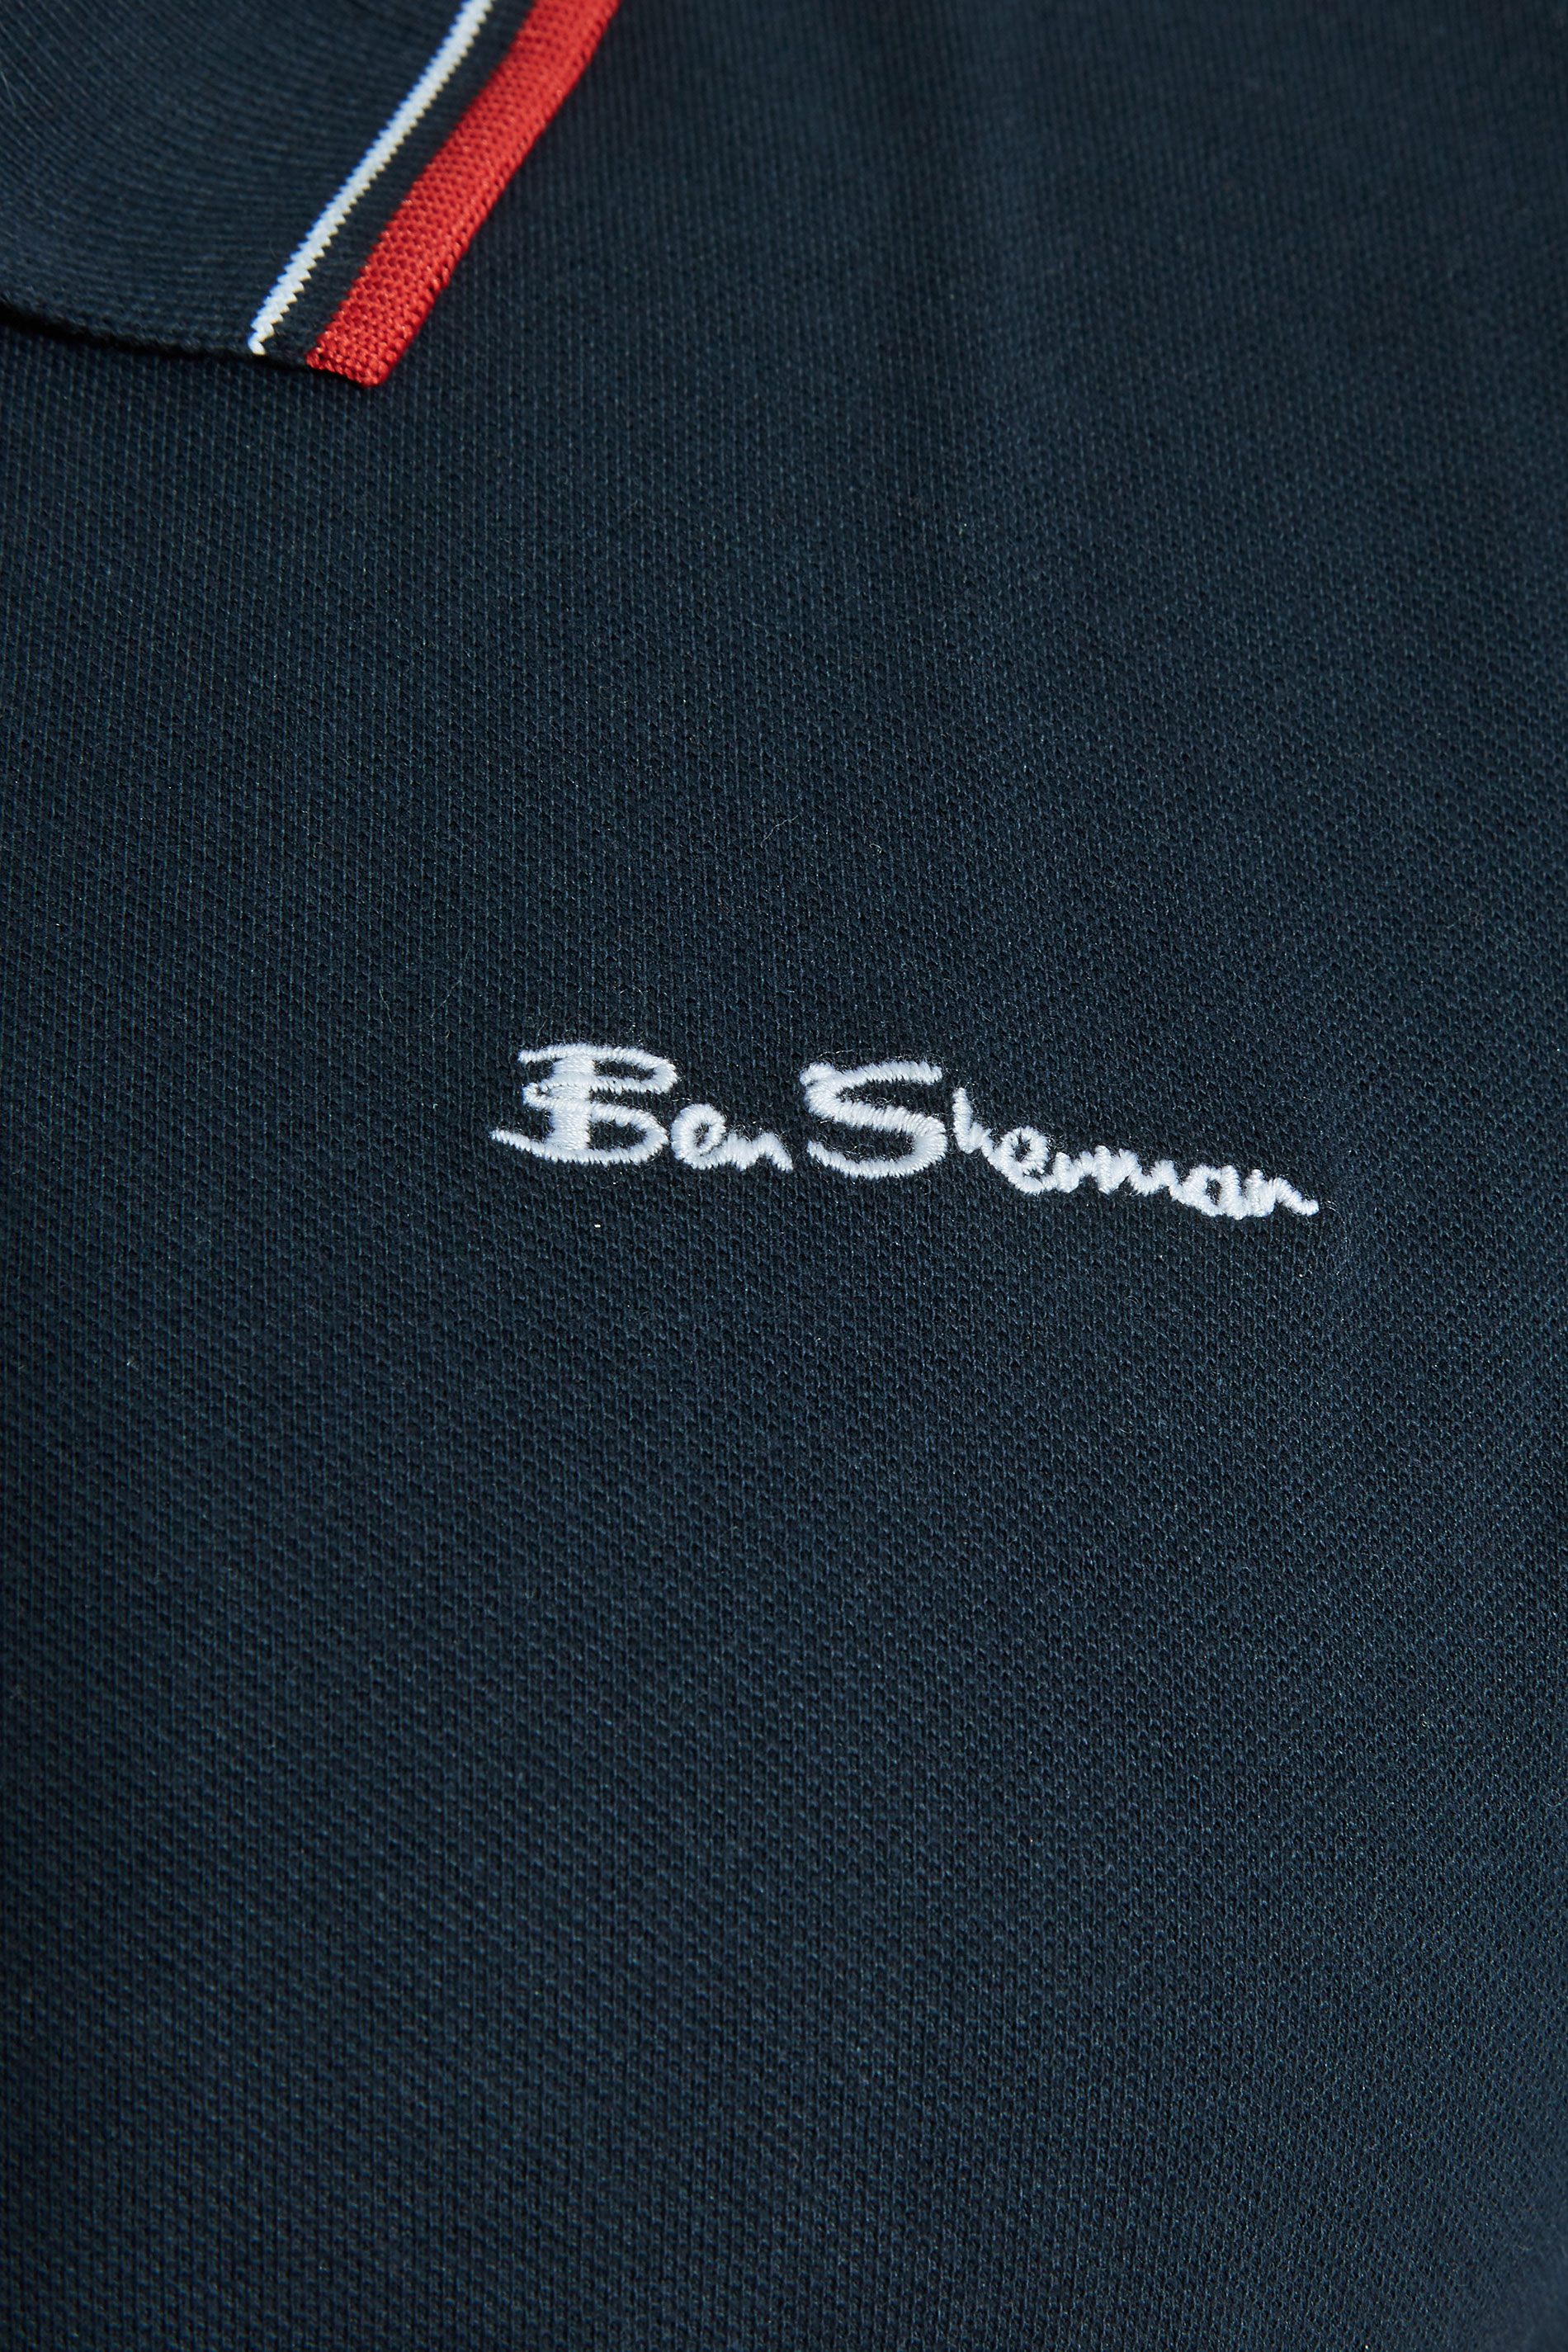 BEN SHERMAN Navy Blue Tipped Polo Shirt | BadRhino 2